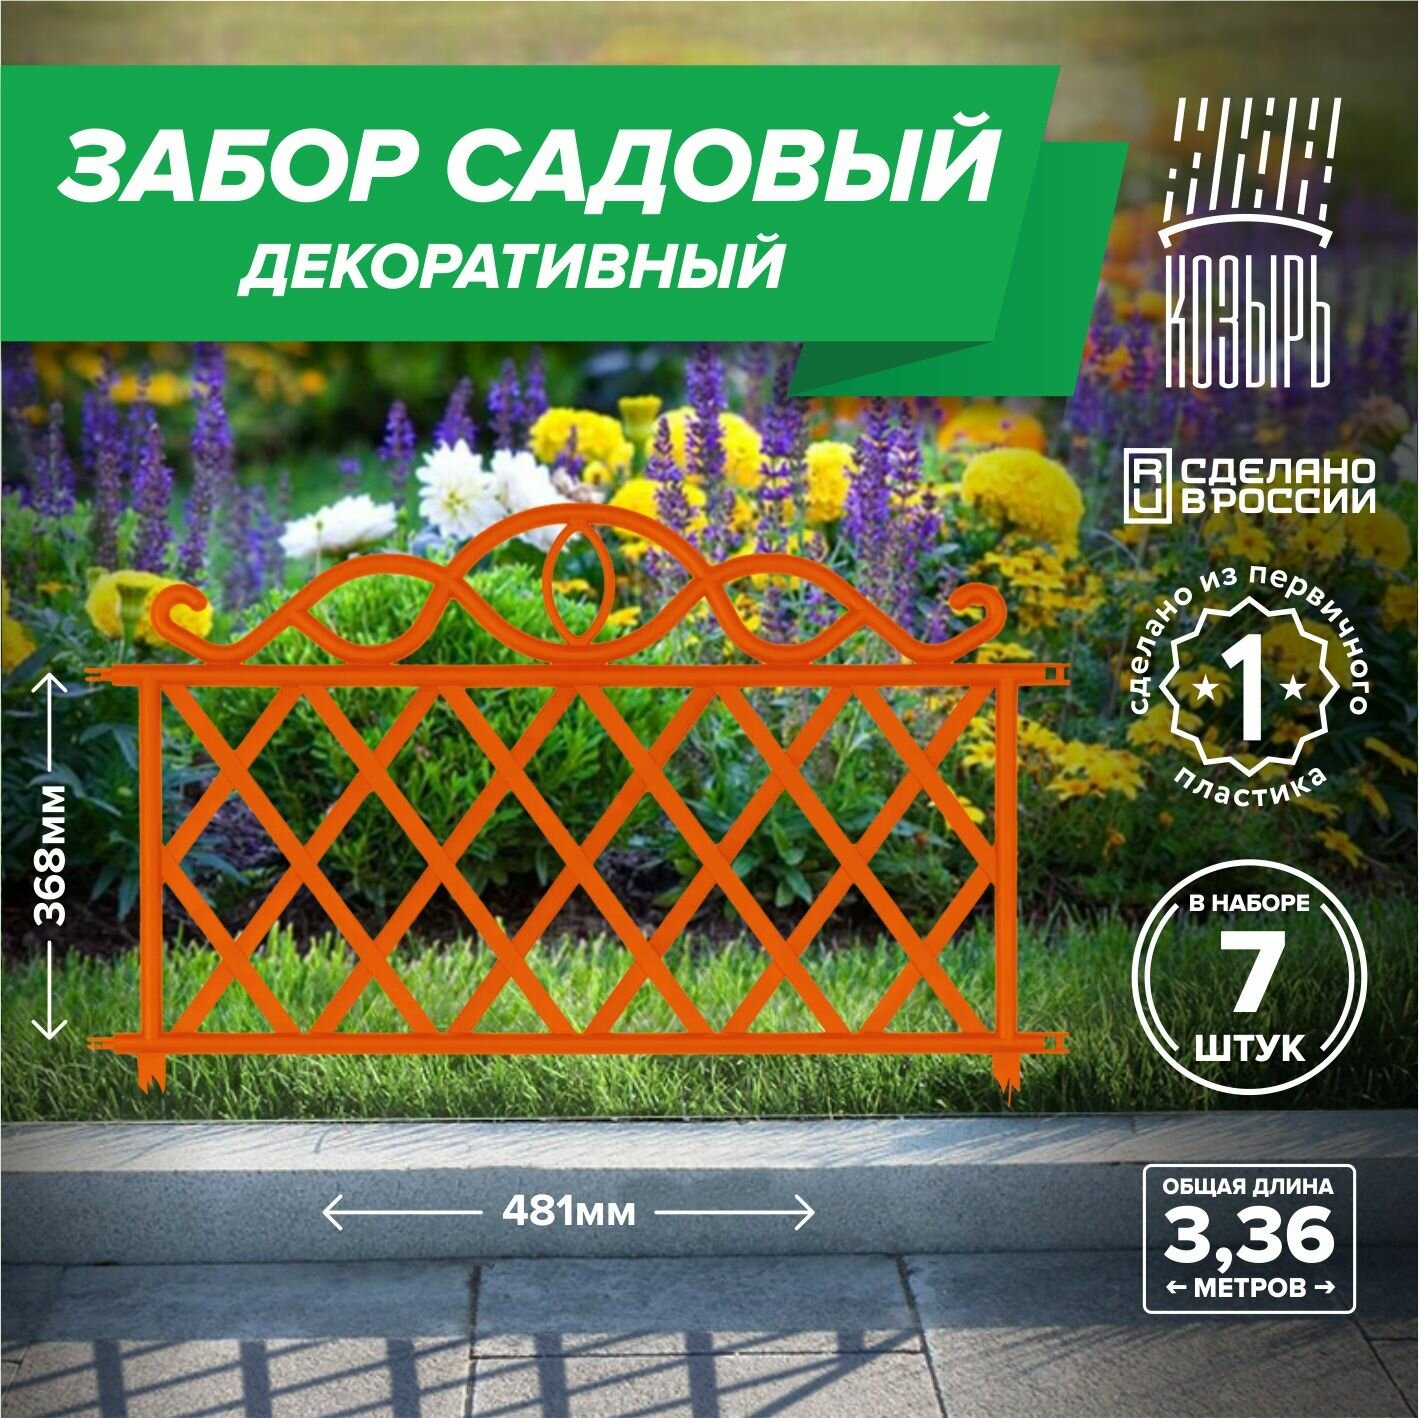 Декоративный садовый забор 48,1см х 11 шт, общая длина: 5,291 м, ограждение для цветника и клумбы, для дачи и сада оранжевый, Россия